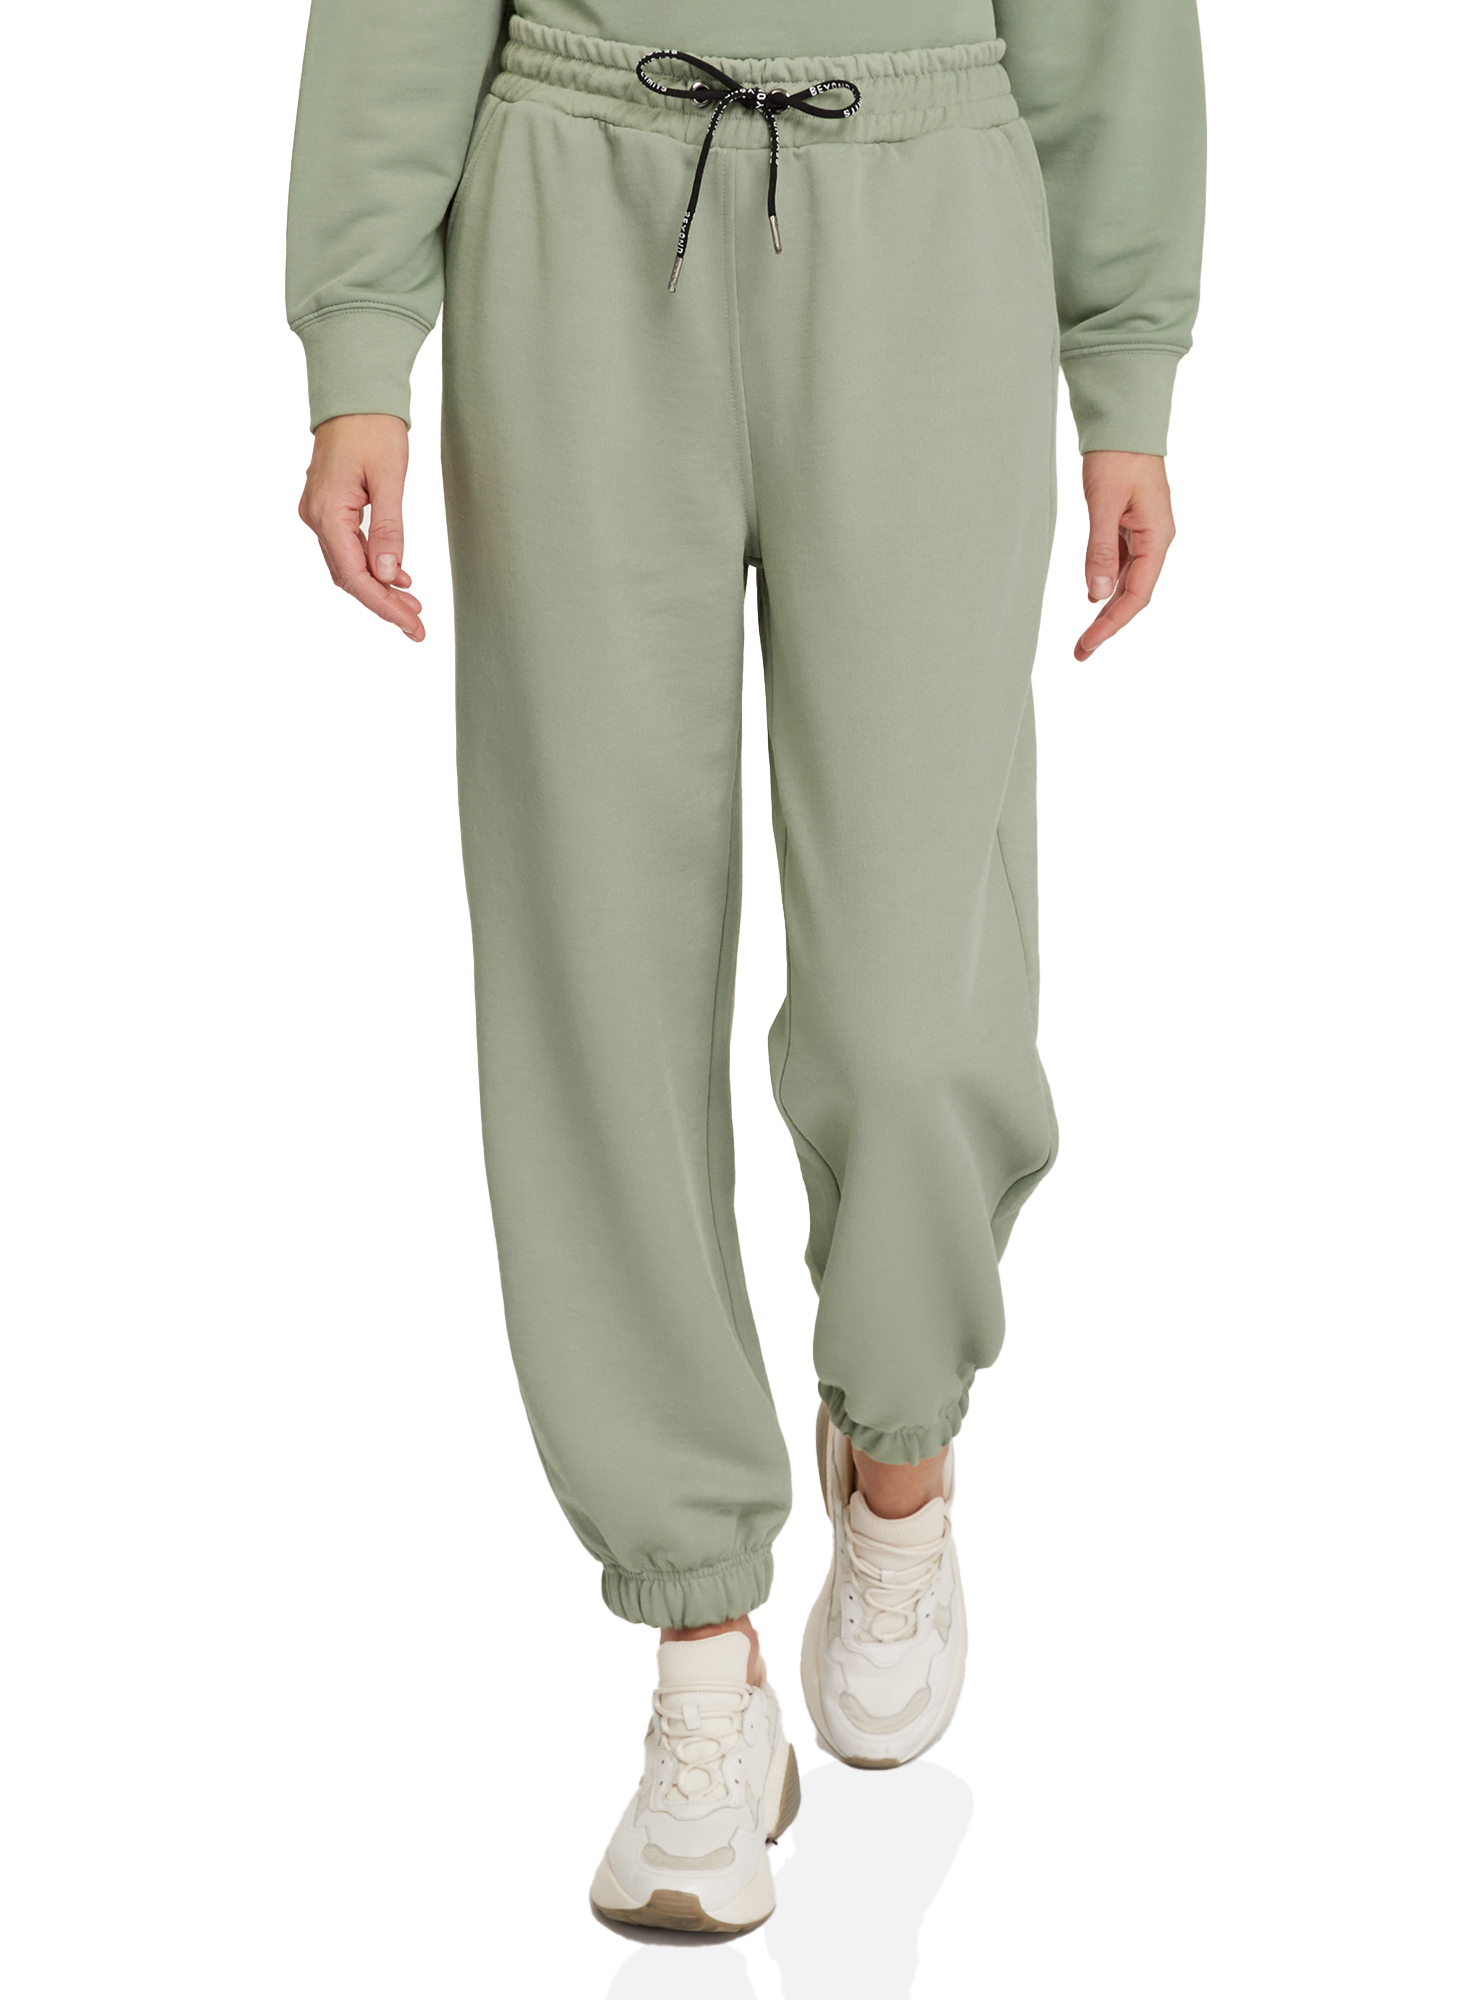 Спортивные брюки женские oodji 16701086 зеленые XL